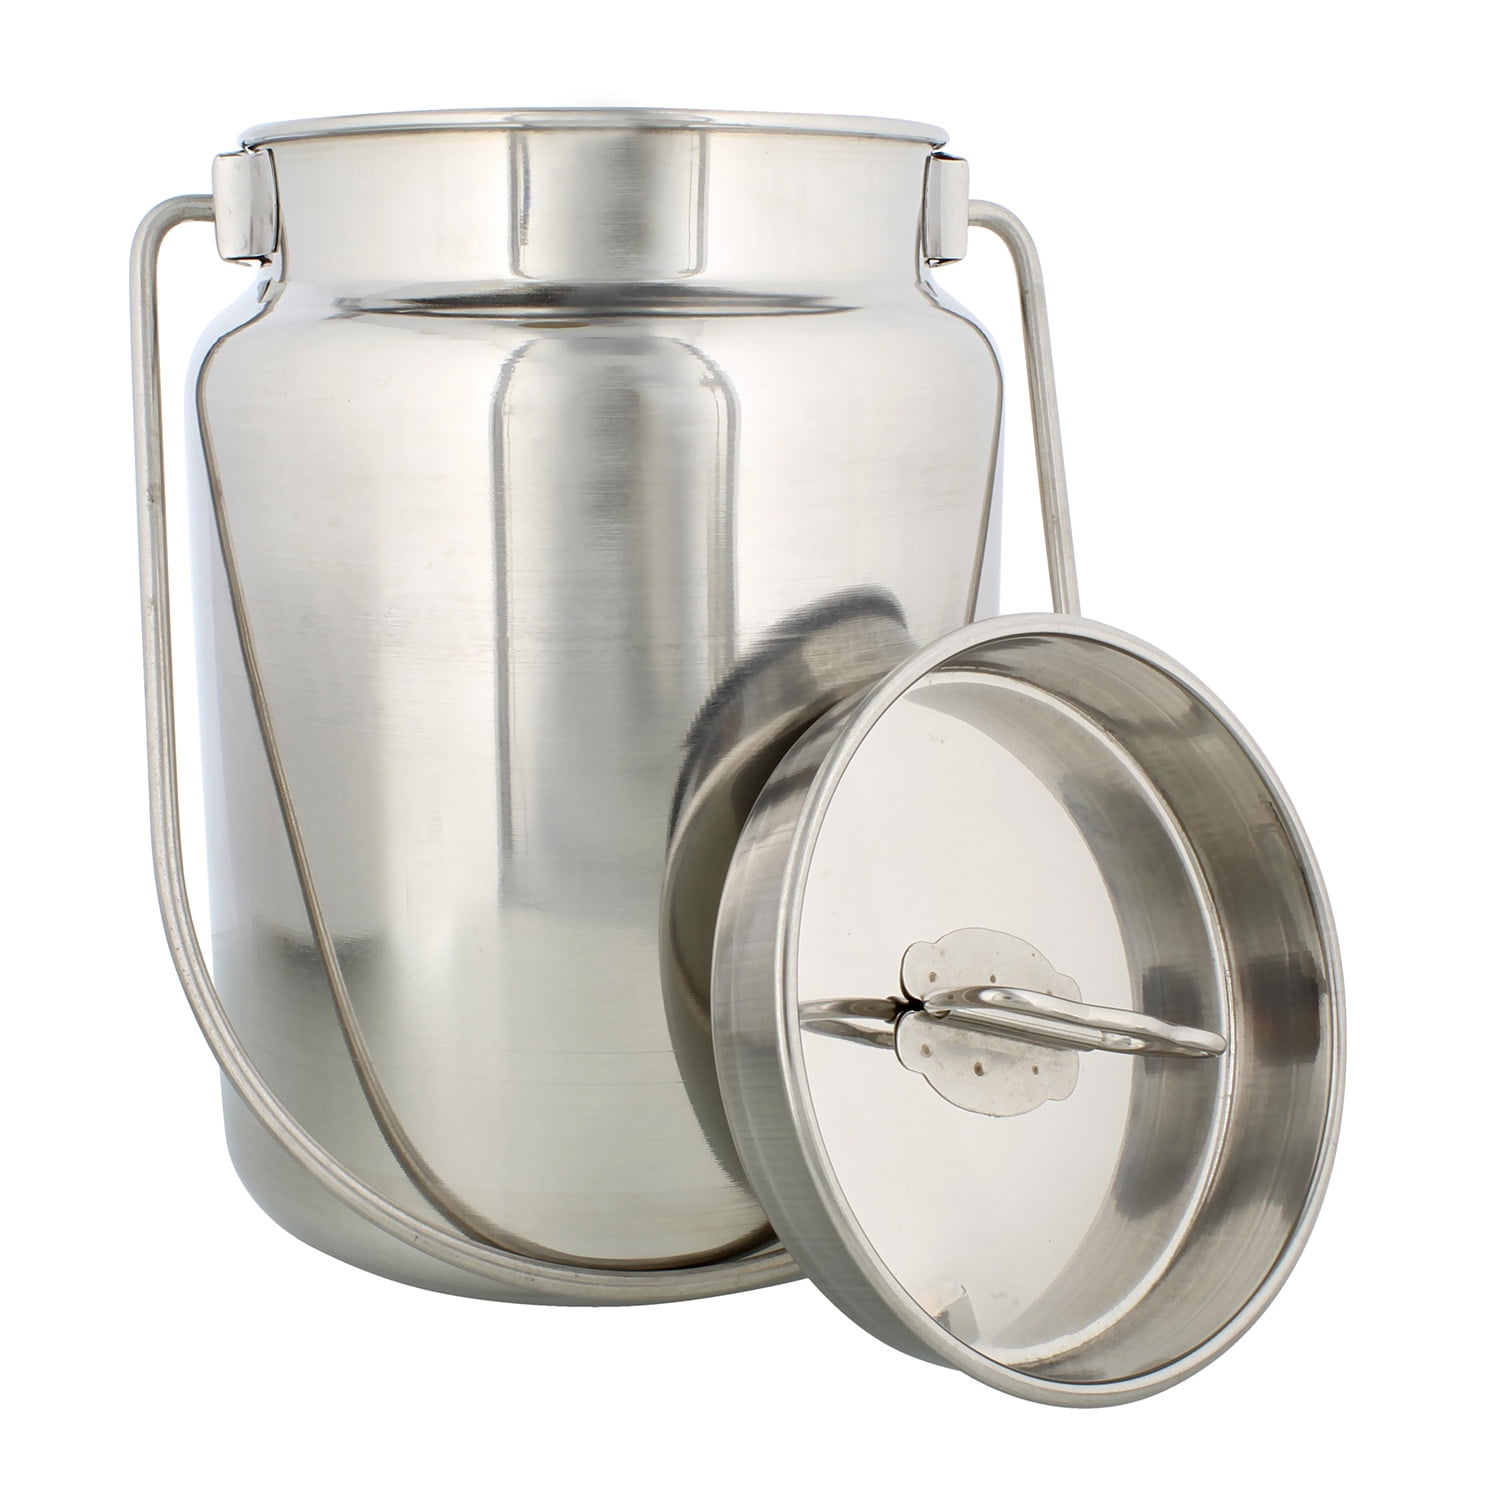 Rural365 Metal Milk Jug, 10 Liter (2.6 Gal) - Stainless Steel Milk Can with  Lid